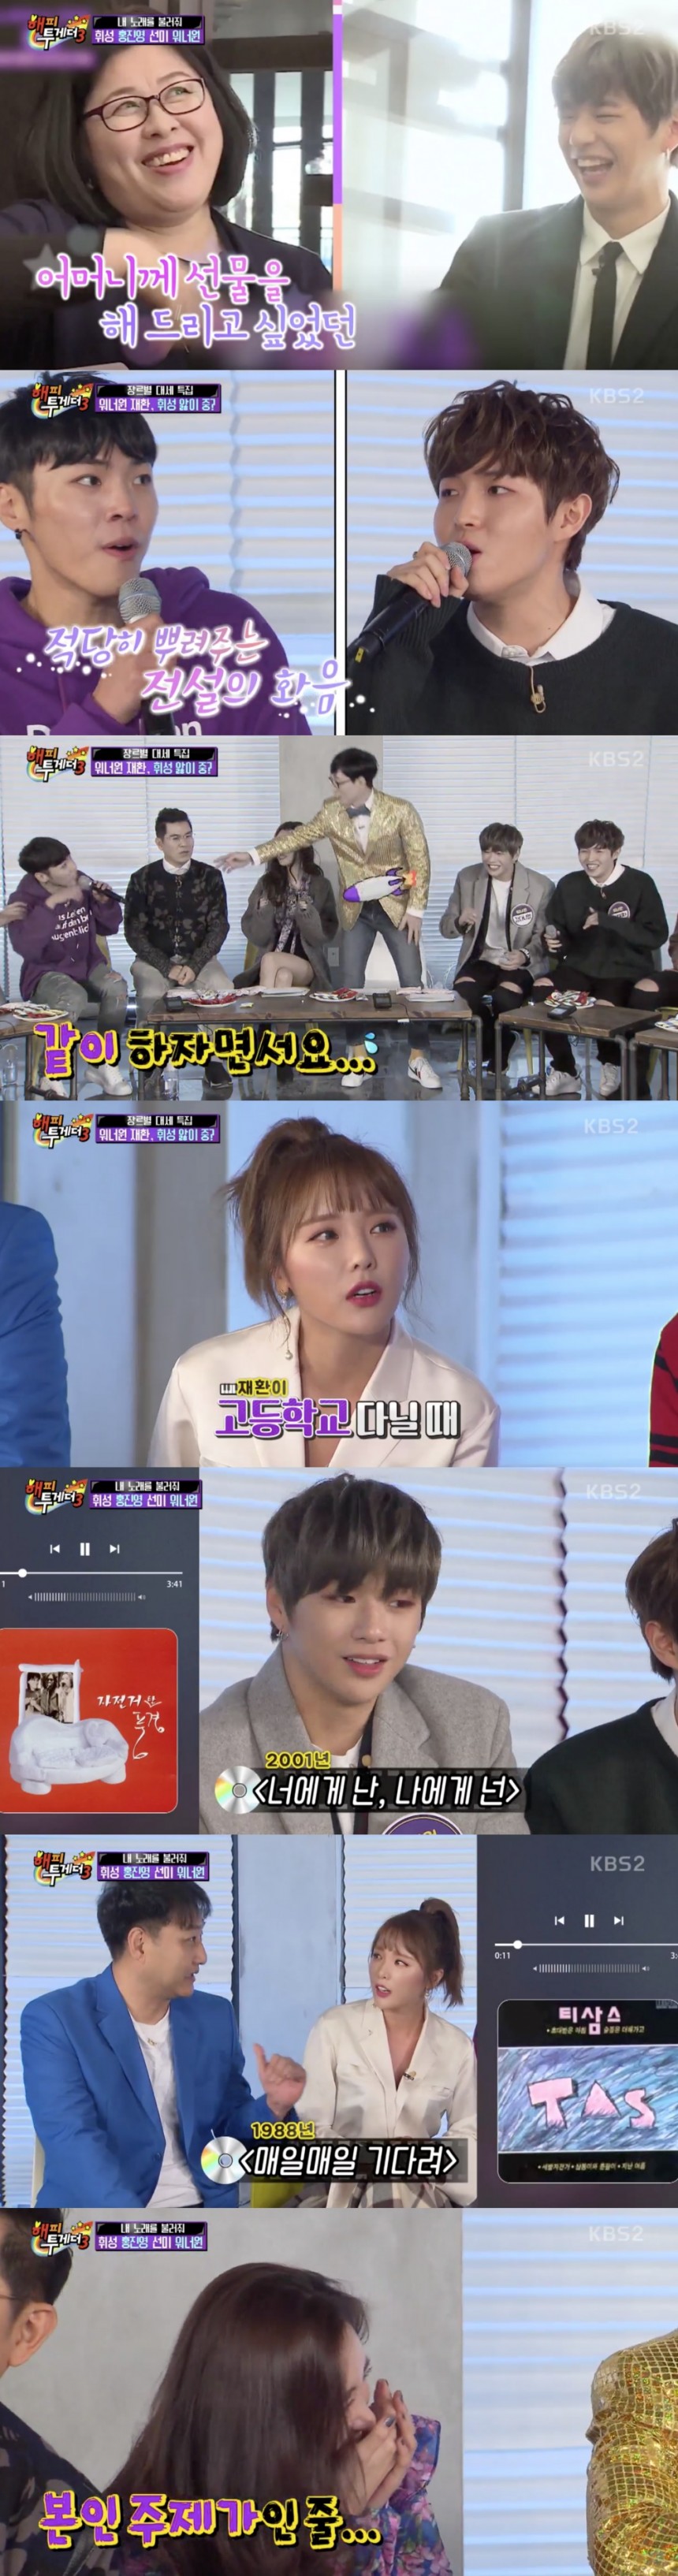 KBS2 ‘해피투게더3’ 방송 캡쳐 